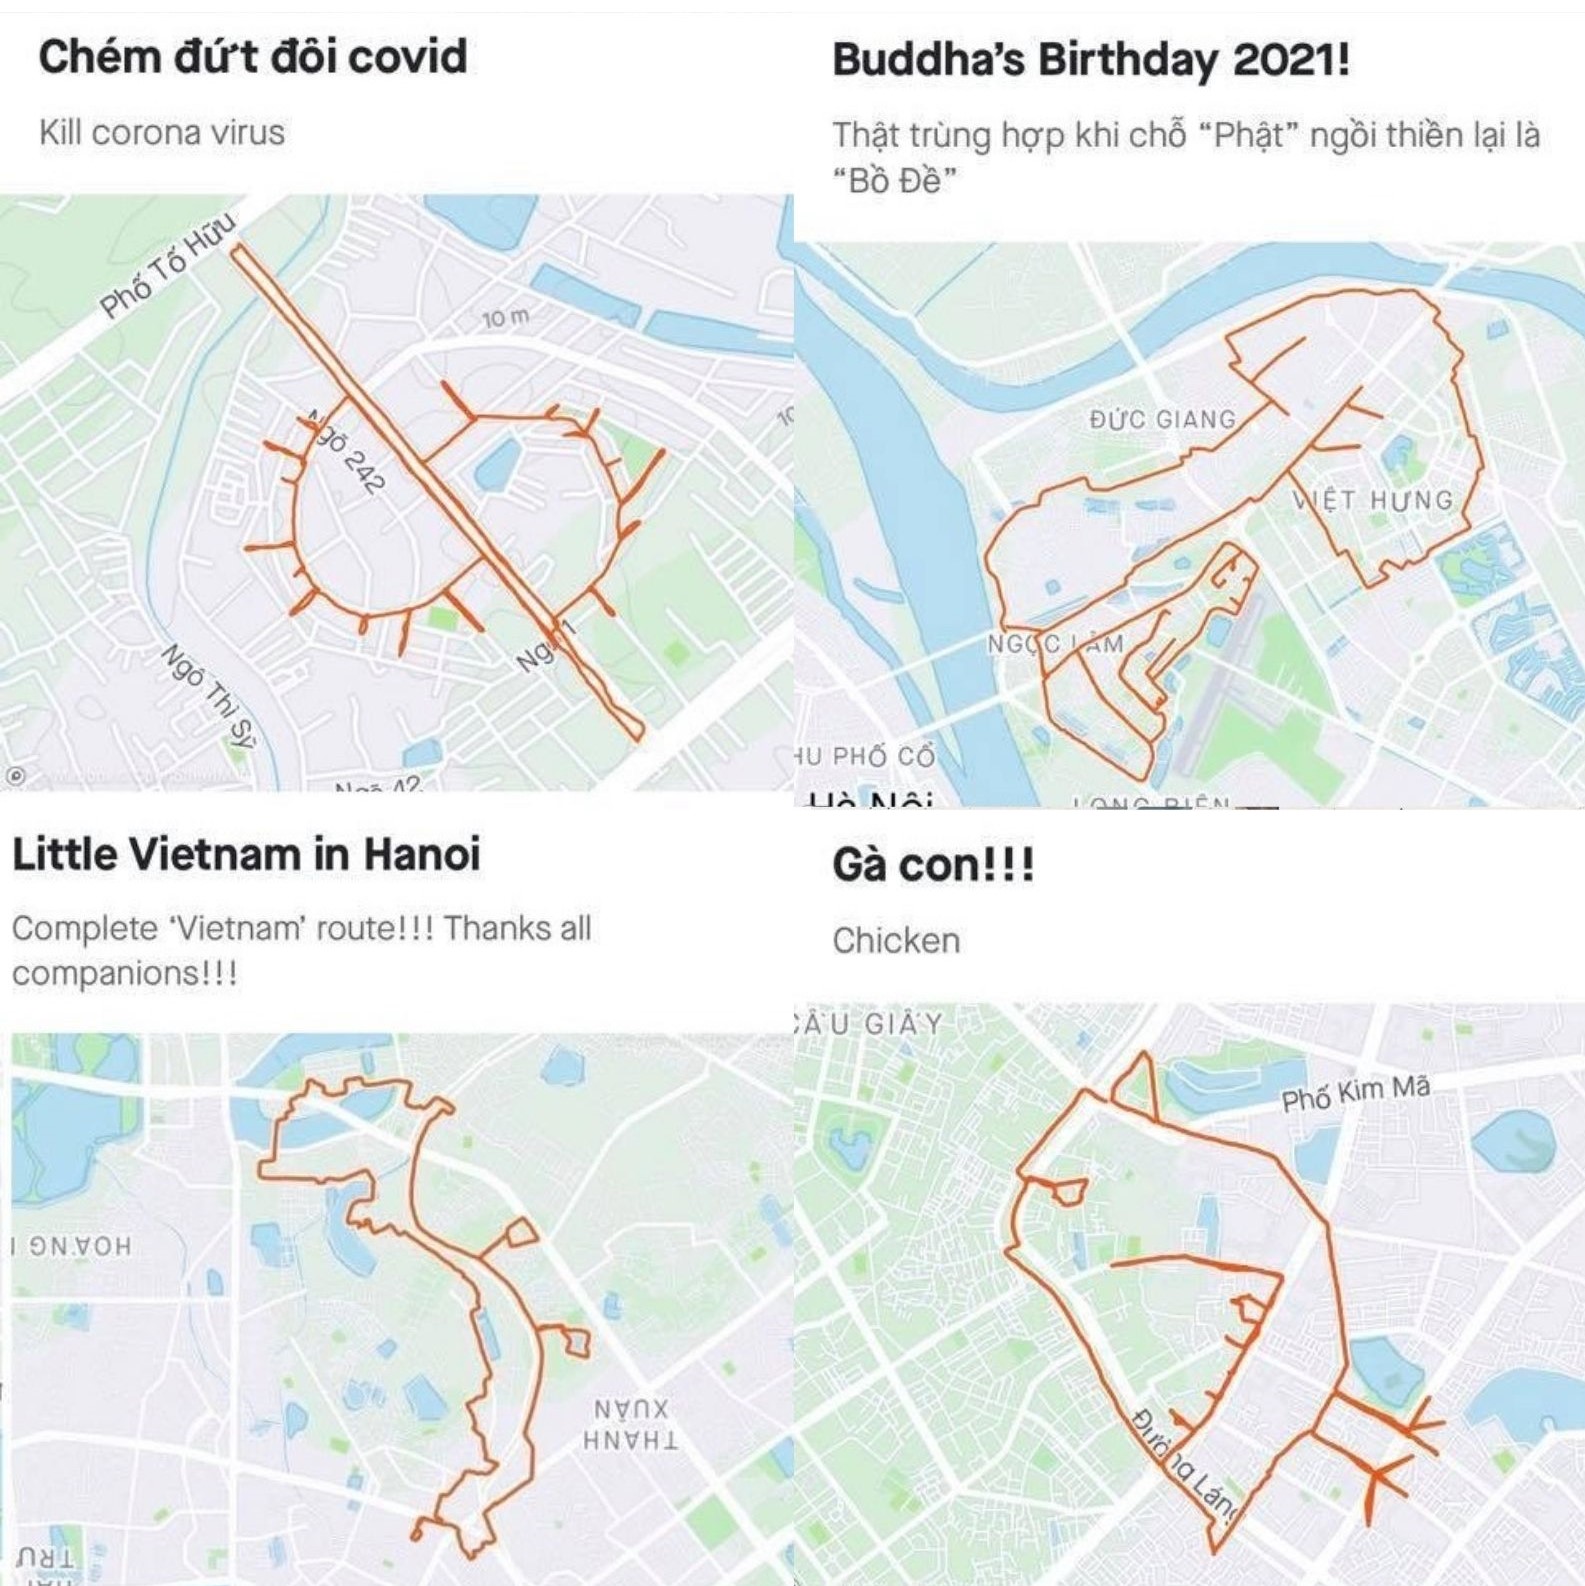 Chạy bộ vẽ hình mèo trên bản đồ Hà Nội để chào đón năm 2023